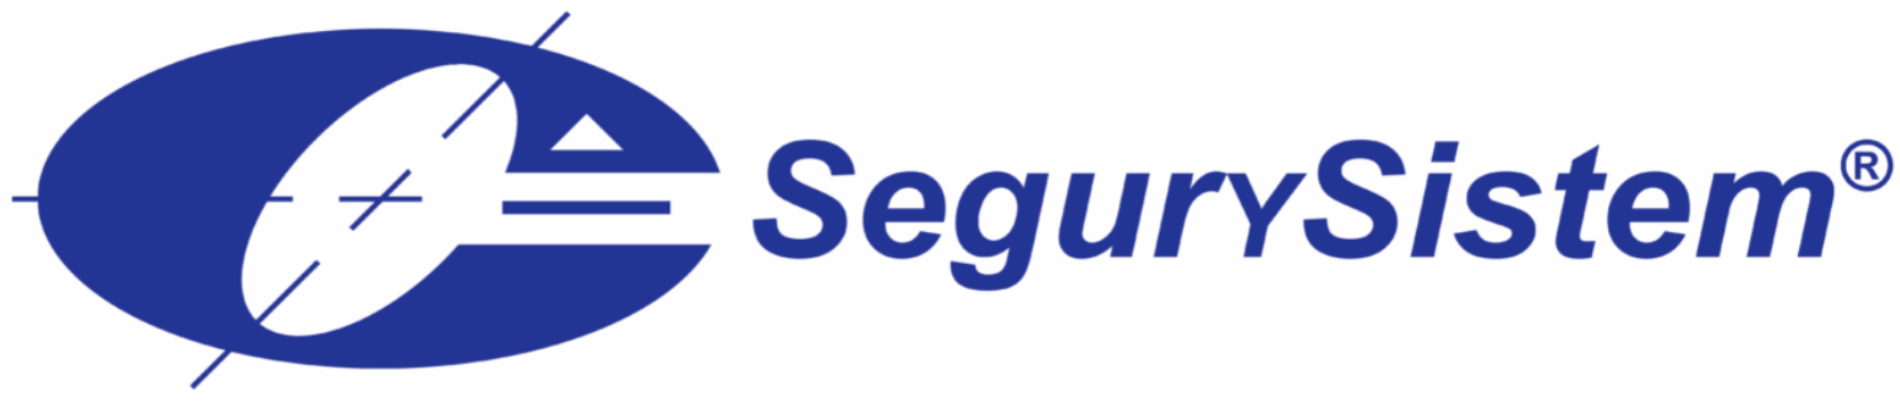 Logo SegurySistem